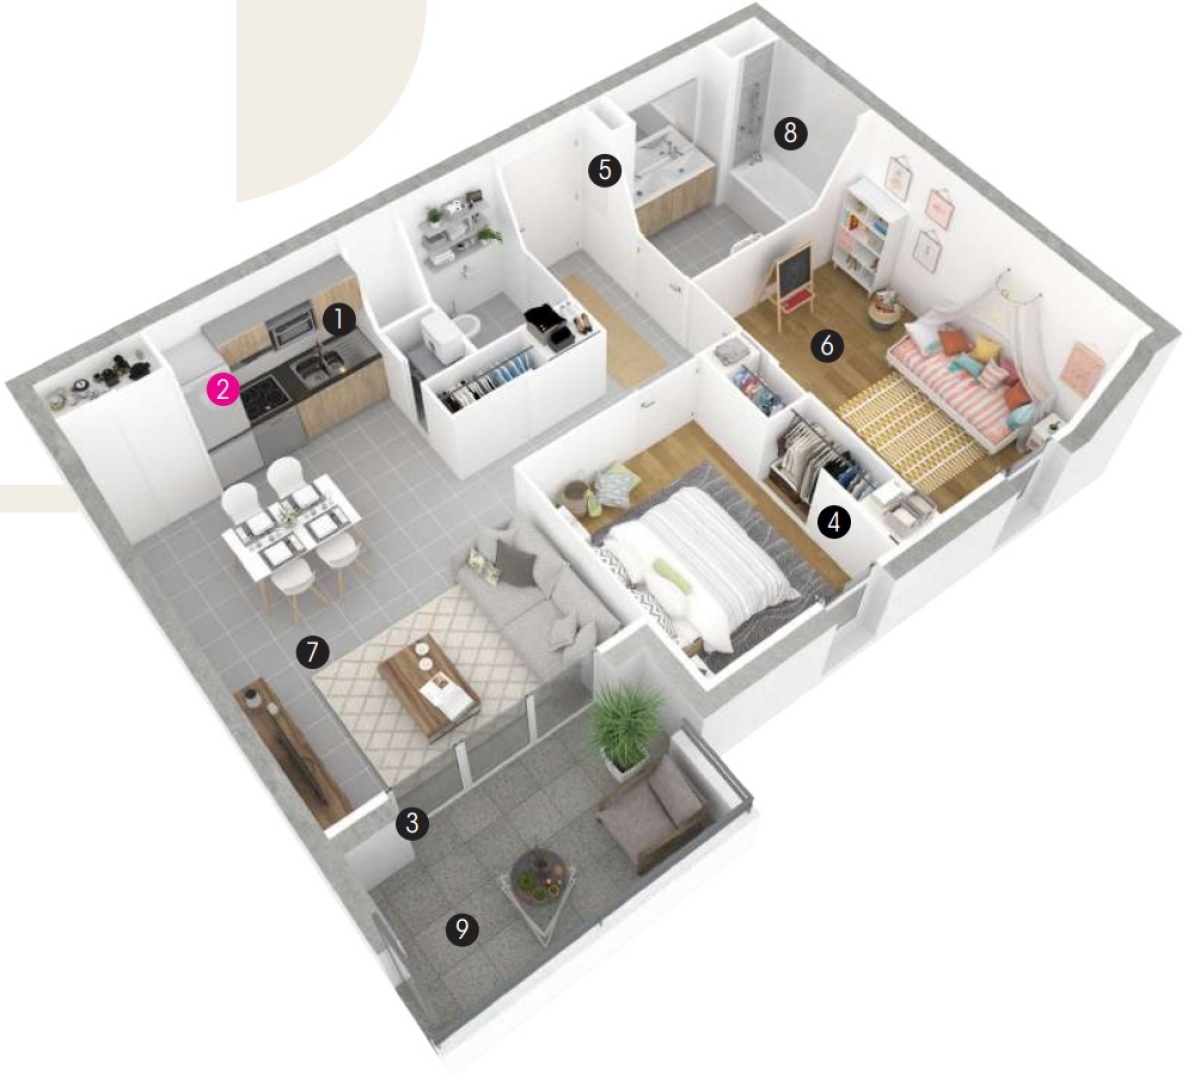 Programme neuf Clos Périés : Appartements neufs à Barrière de Paris référence 6272, aperçu n°1